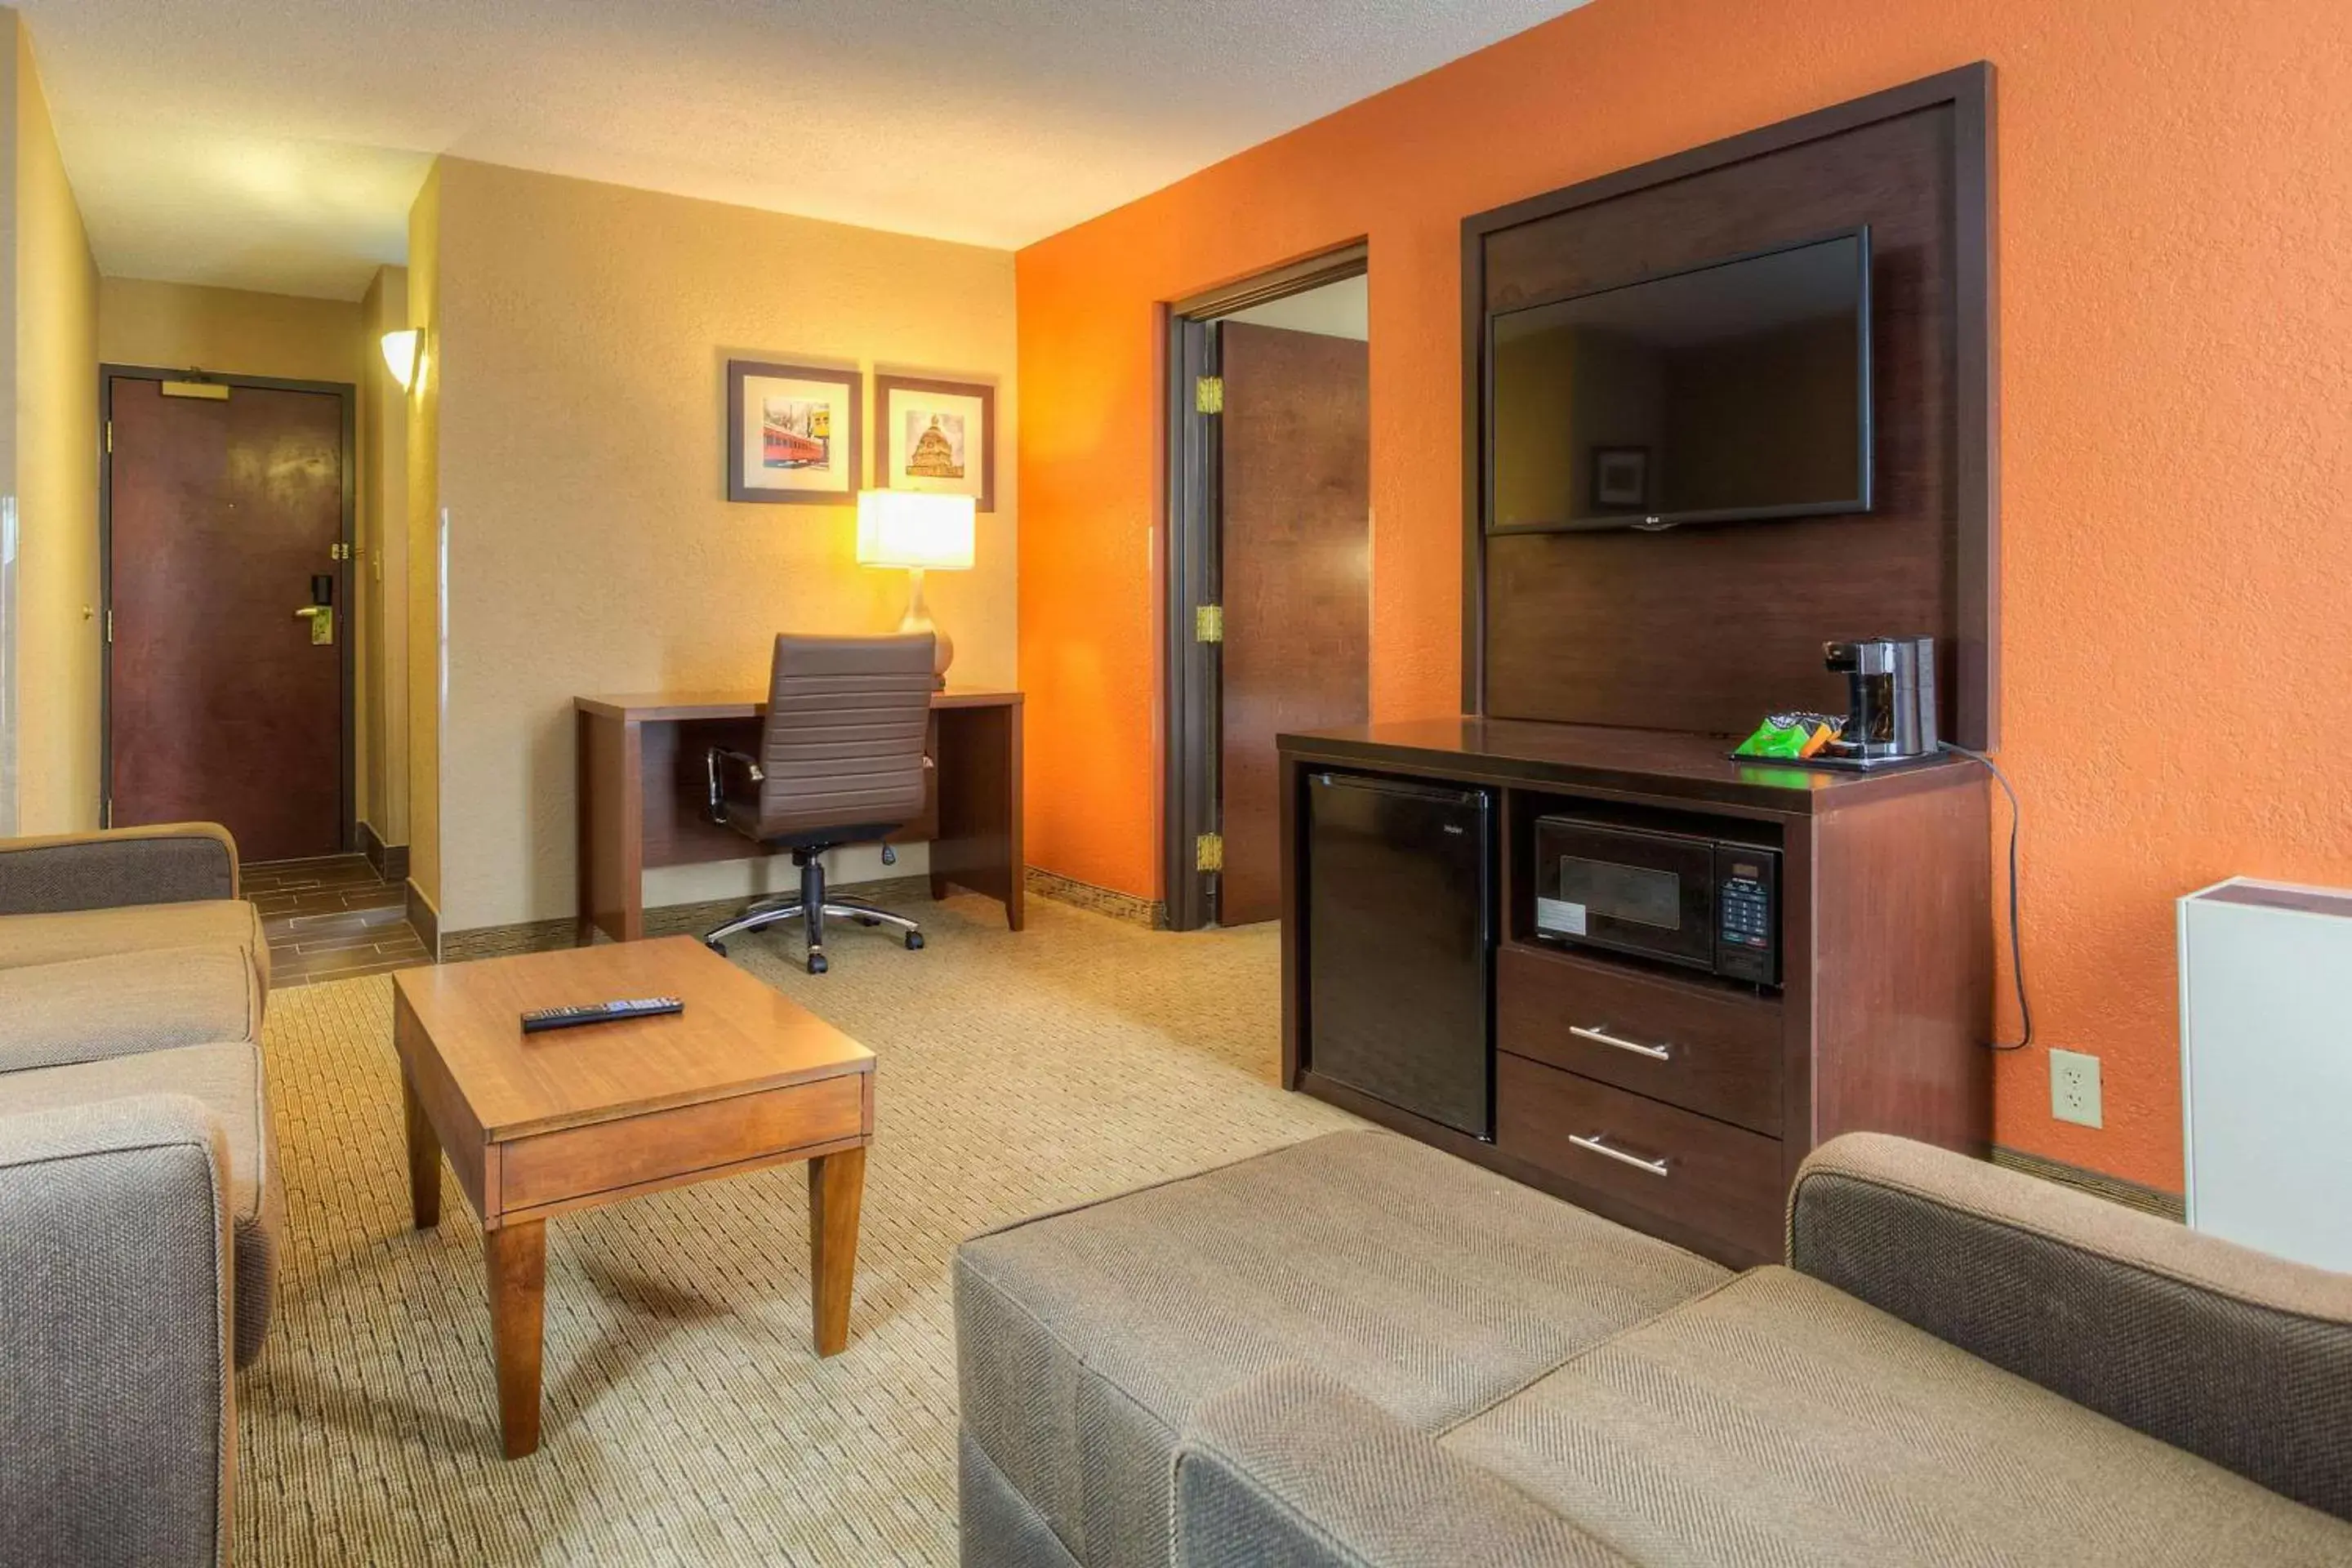 Bedroom, TV/Entertainment Center in Comfort Inn & Suites Evansville Airport